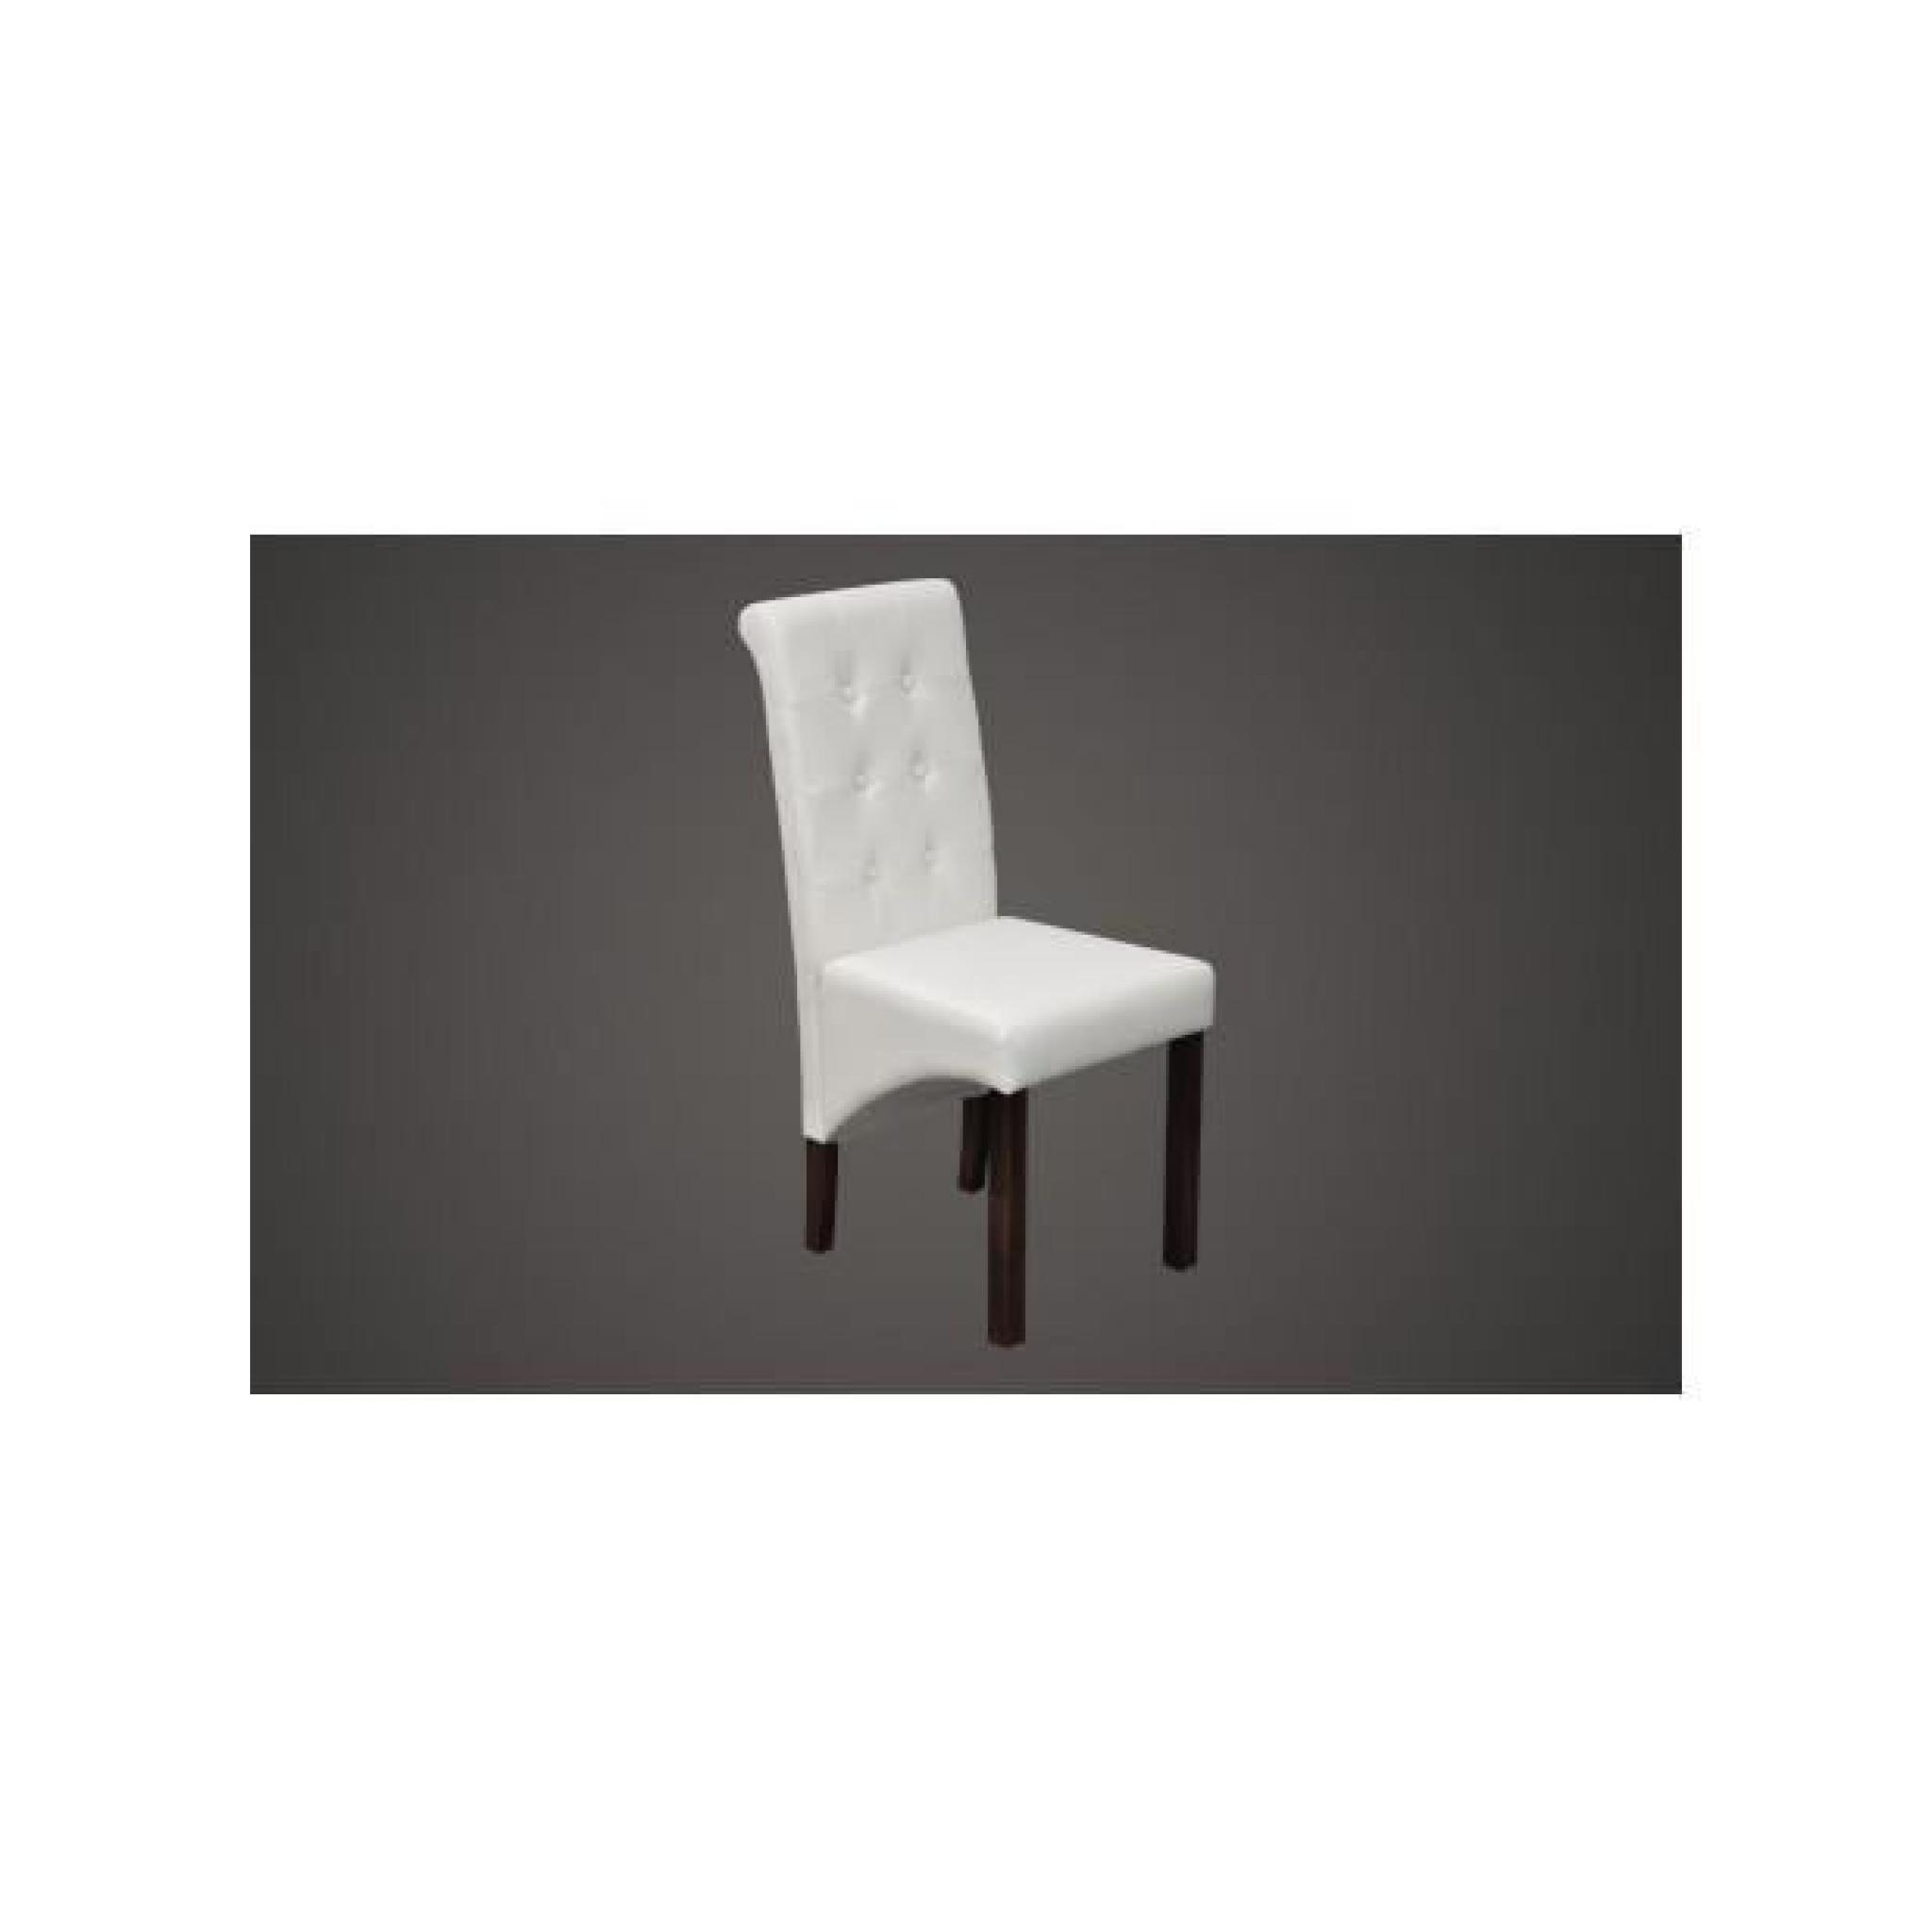 Superbe Chaise antique PU cuir blanc (lot de 6)   pas cher